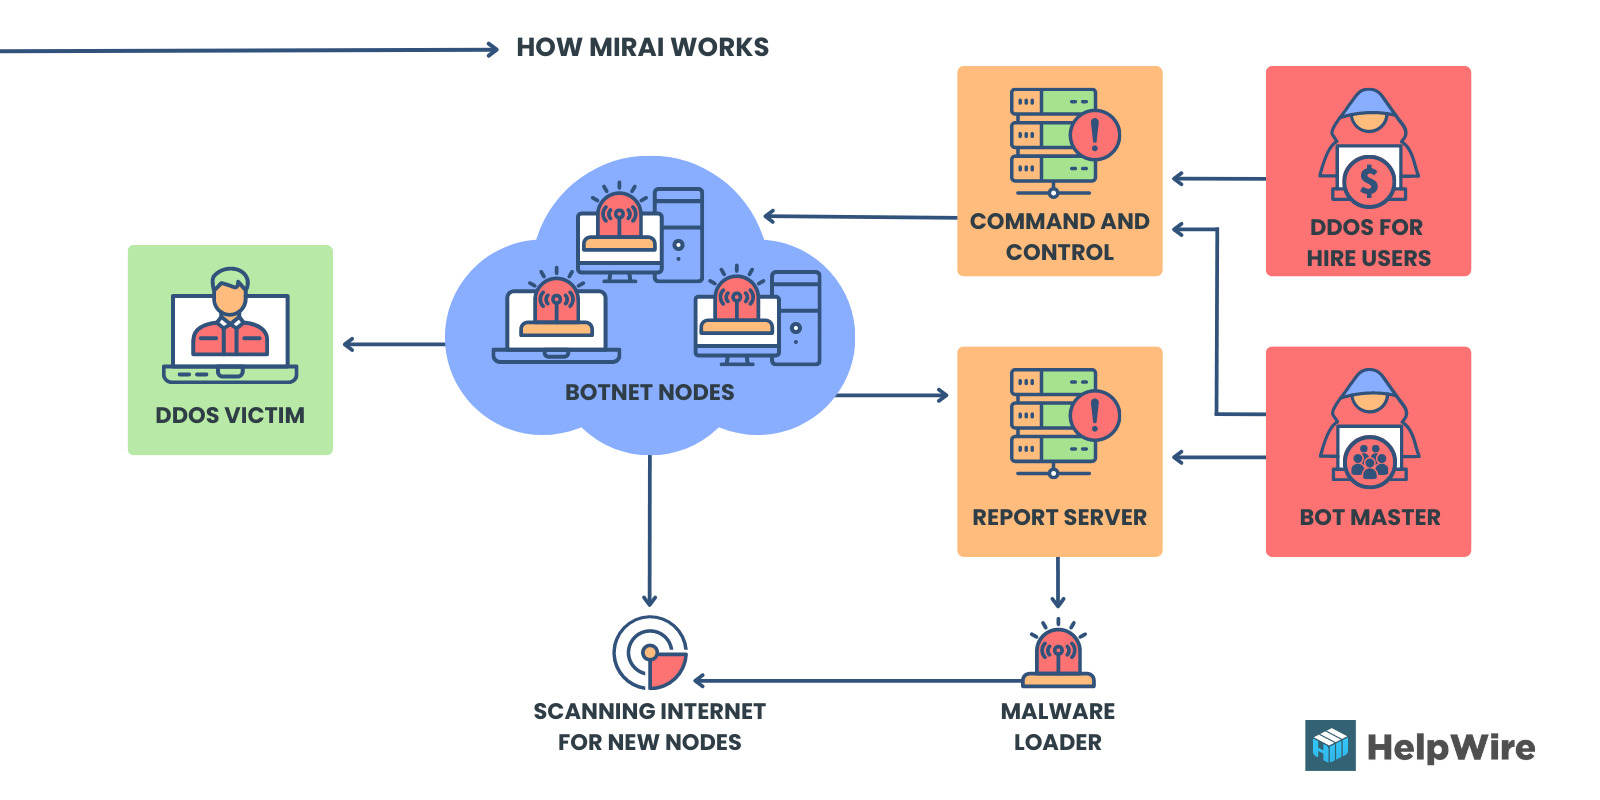 How Mirai botnet works